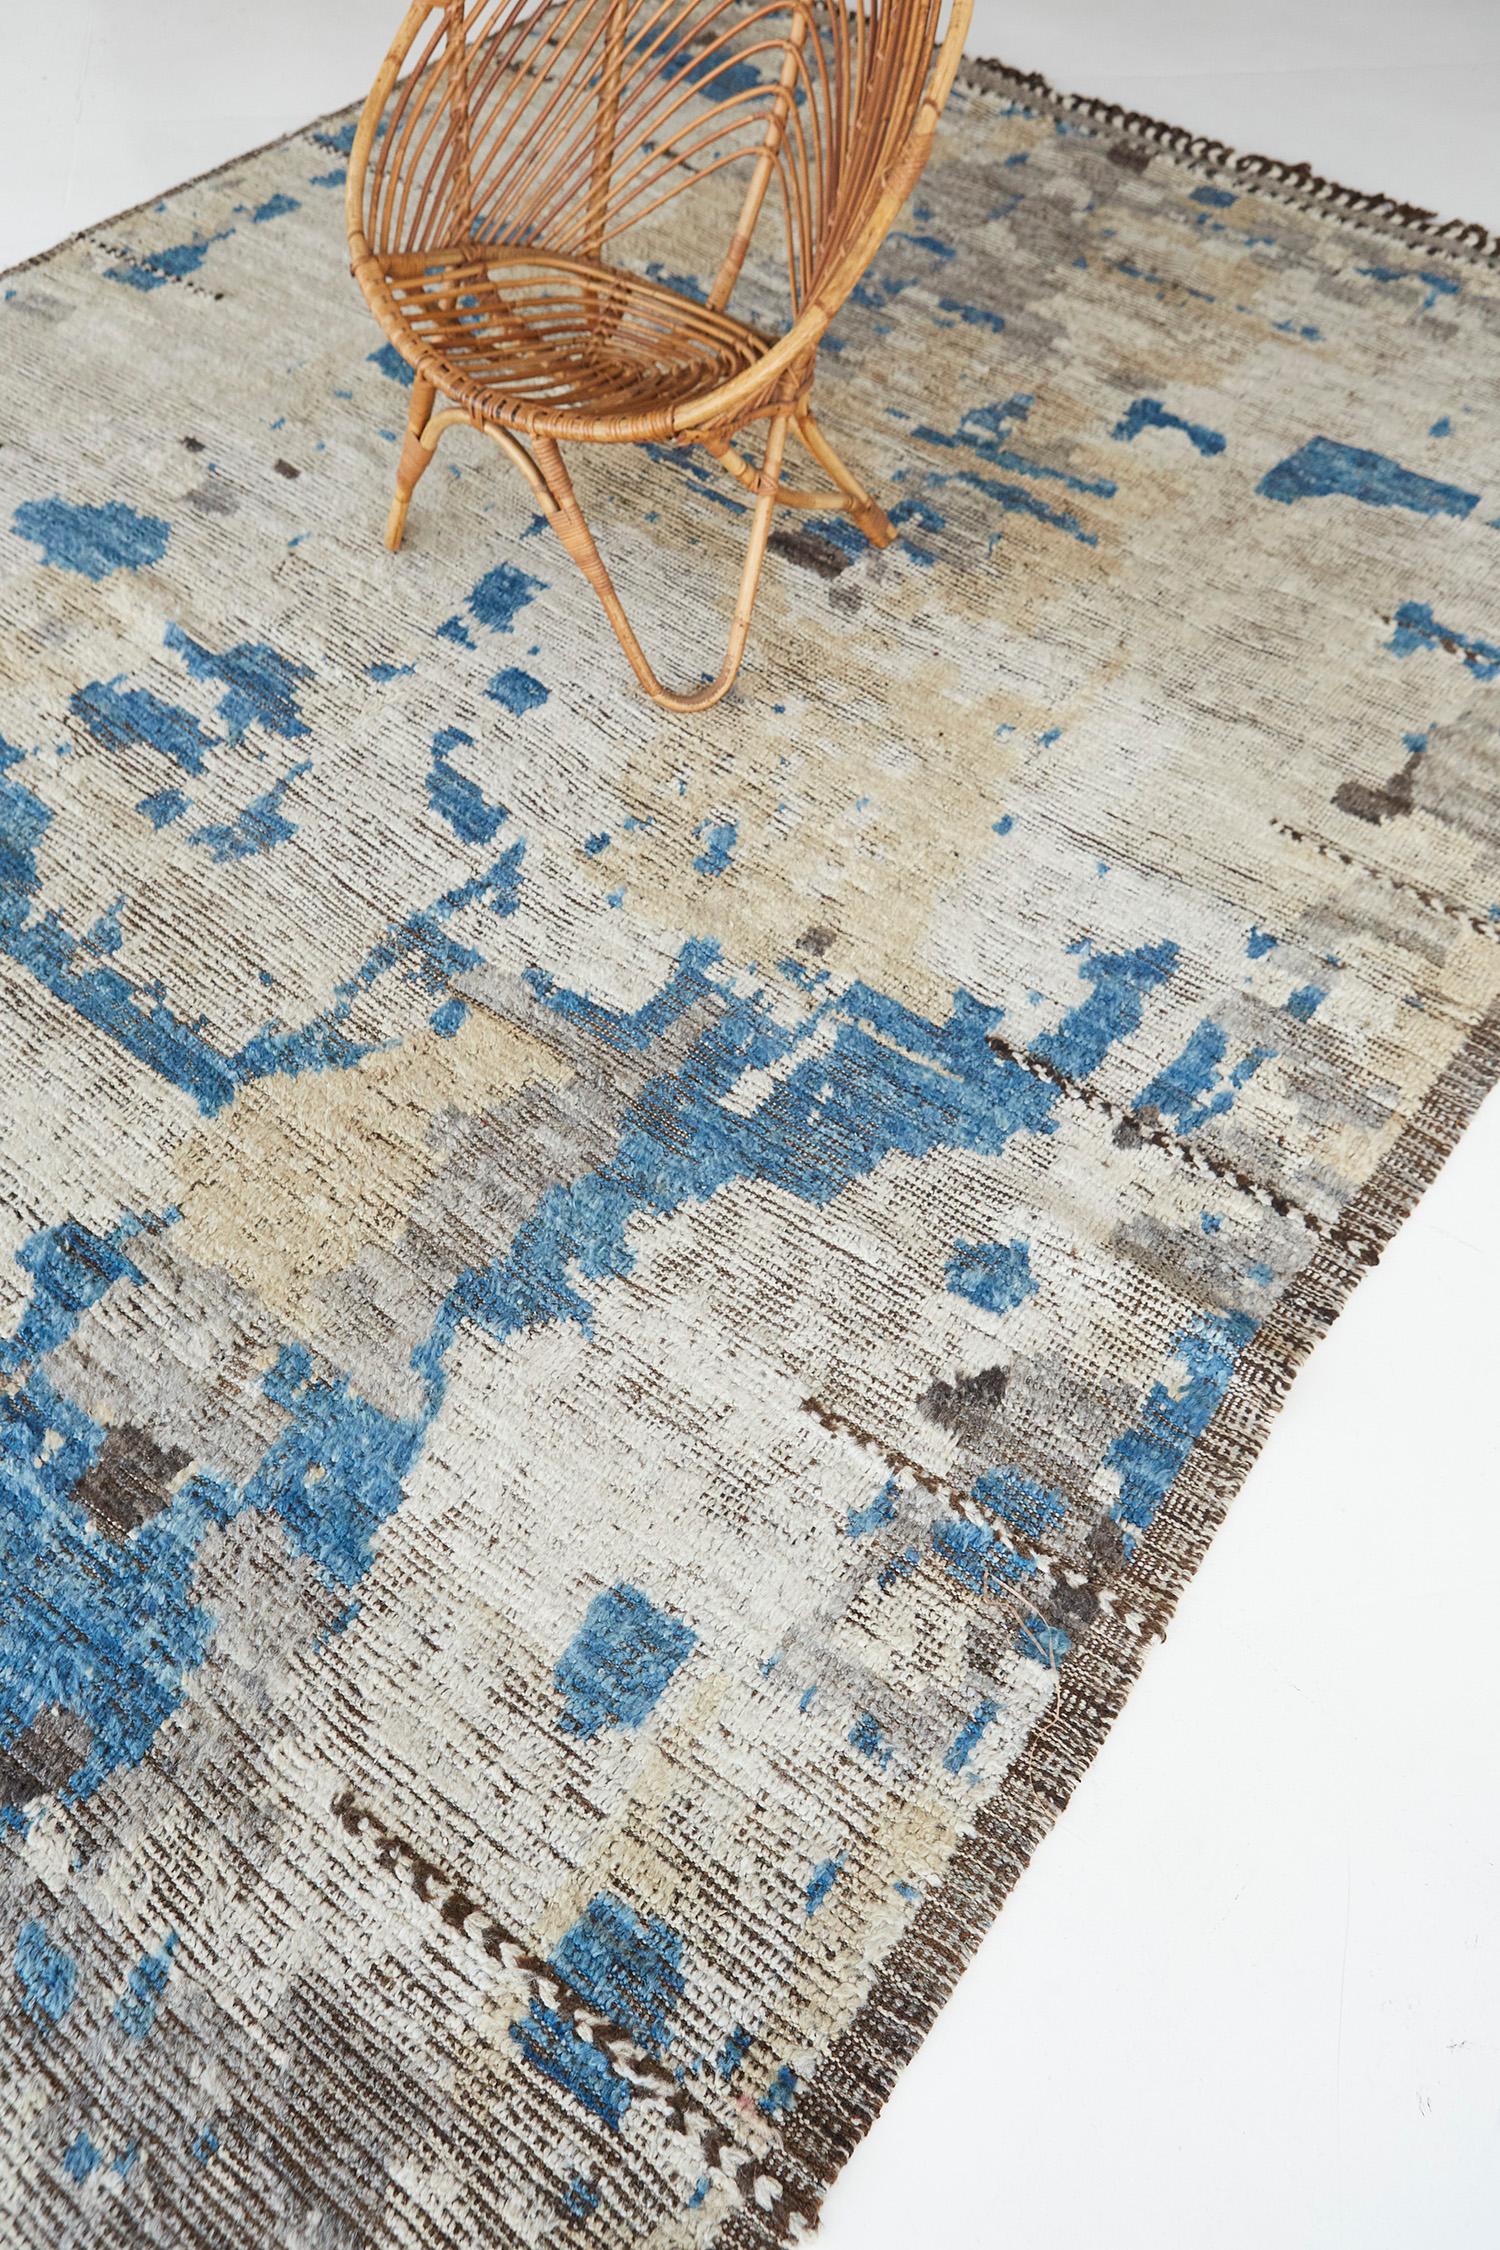 Benhaddou ist ein wunderschöner, strukturierter Teppich mit geprägten Details in einem geometrischen und zeitgenössischen Gesamtdesign. Unregelmäßig verlaufende Linien bringen Bewegung in die moderne Designwelt und sind vom Atlasgebirge in Marokko